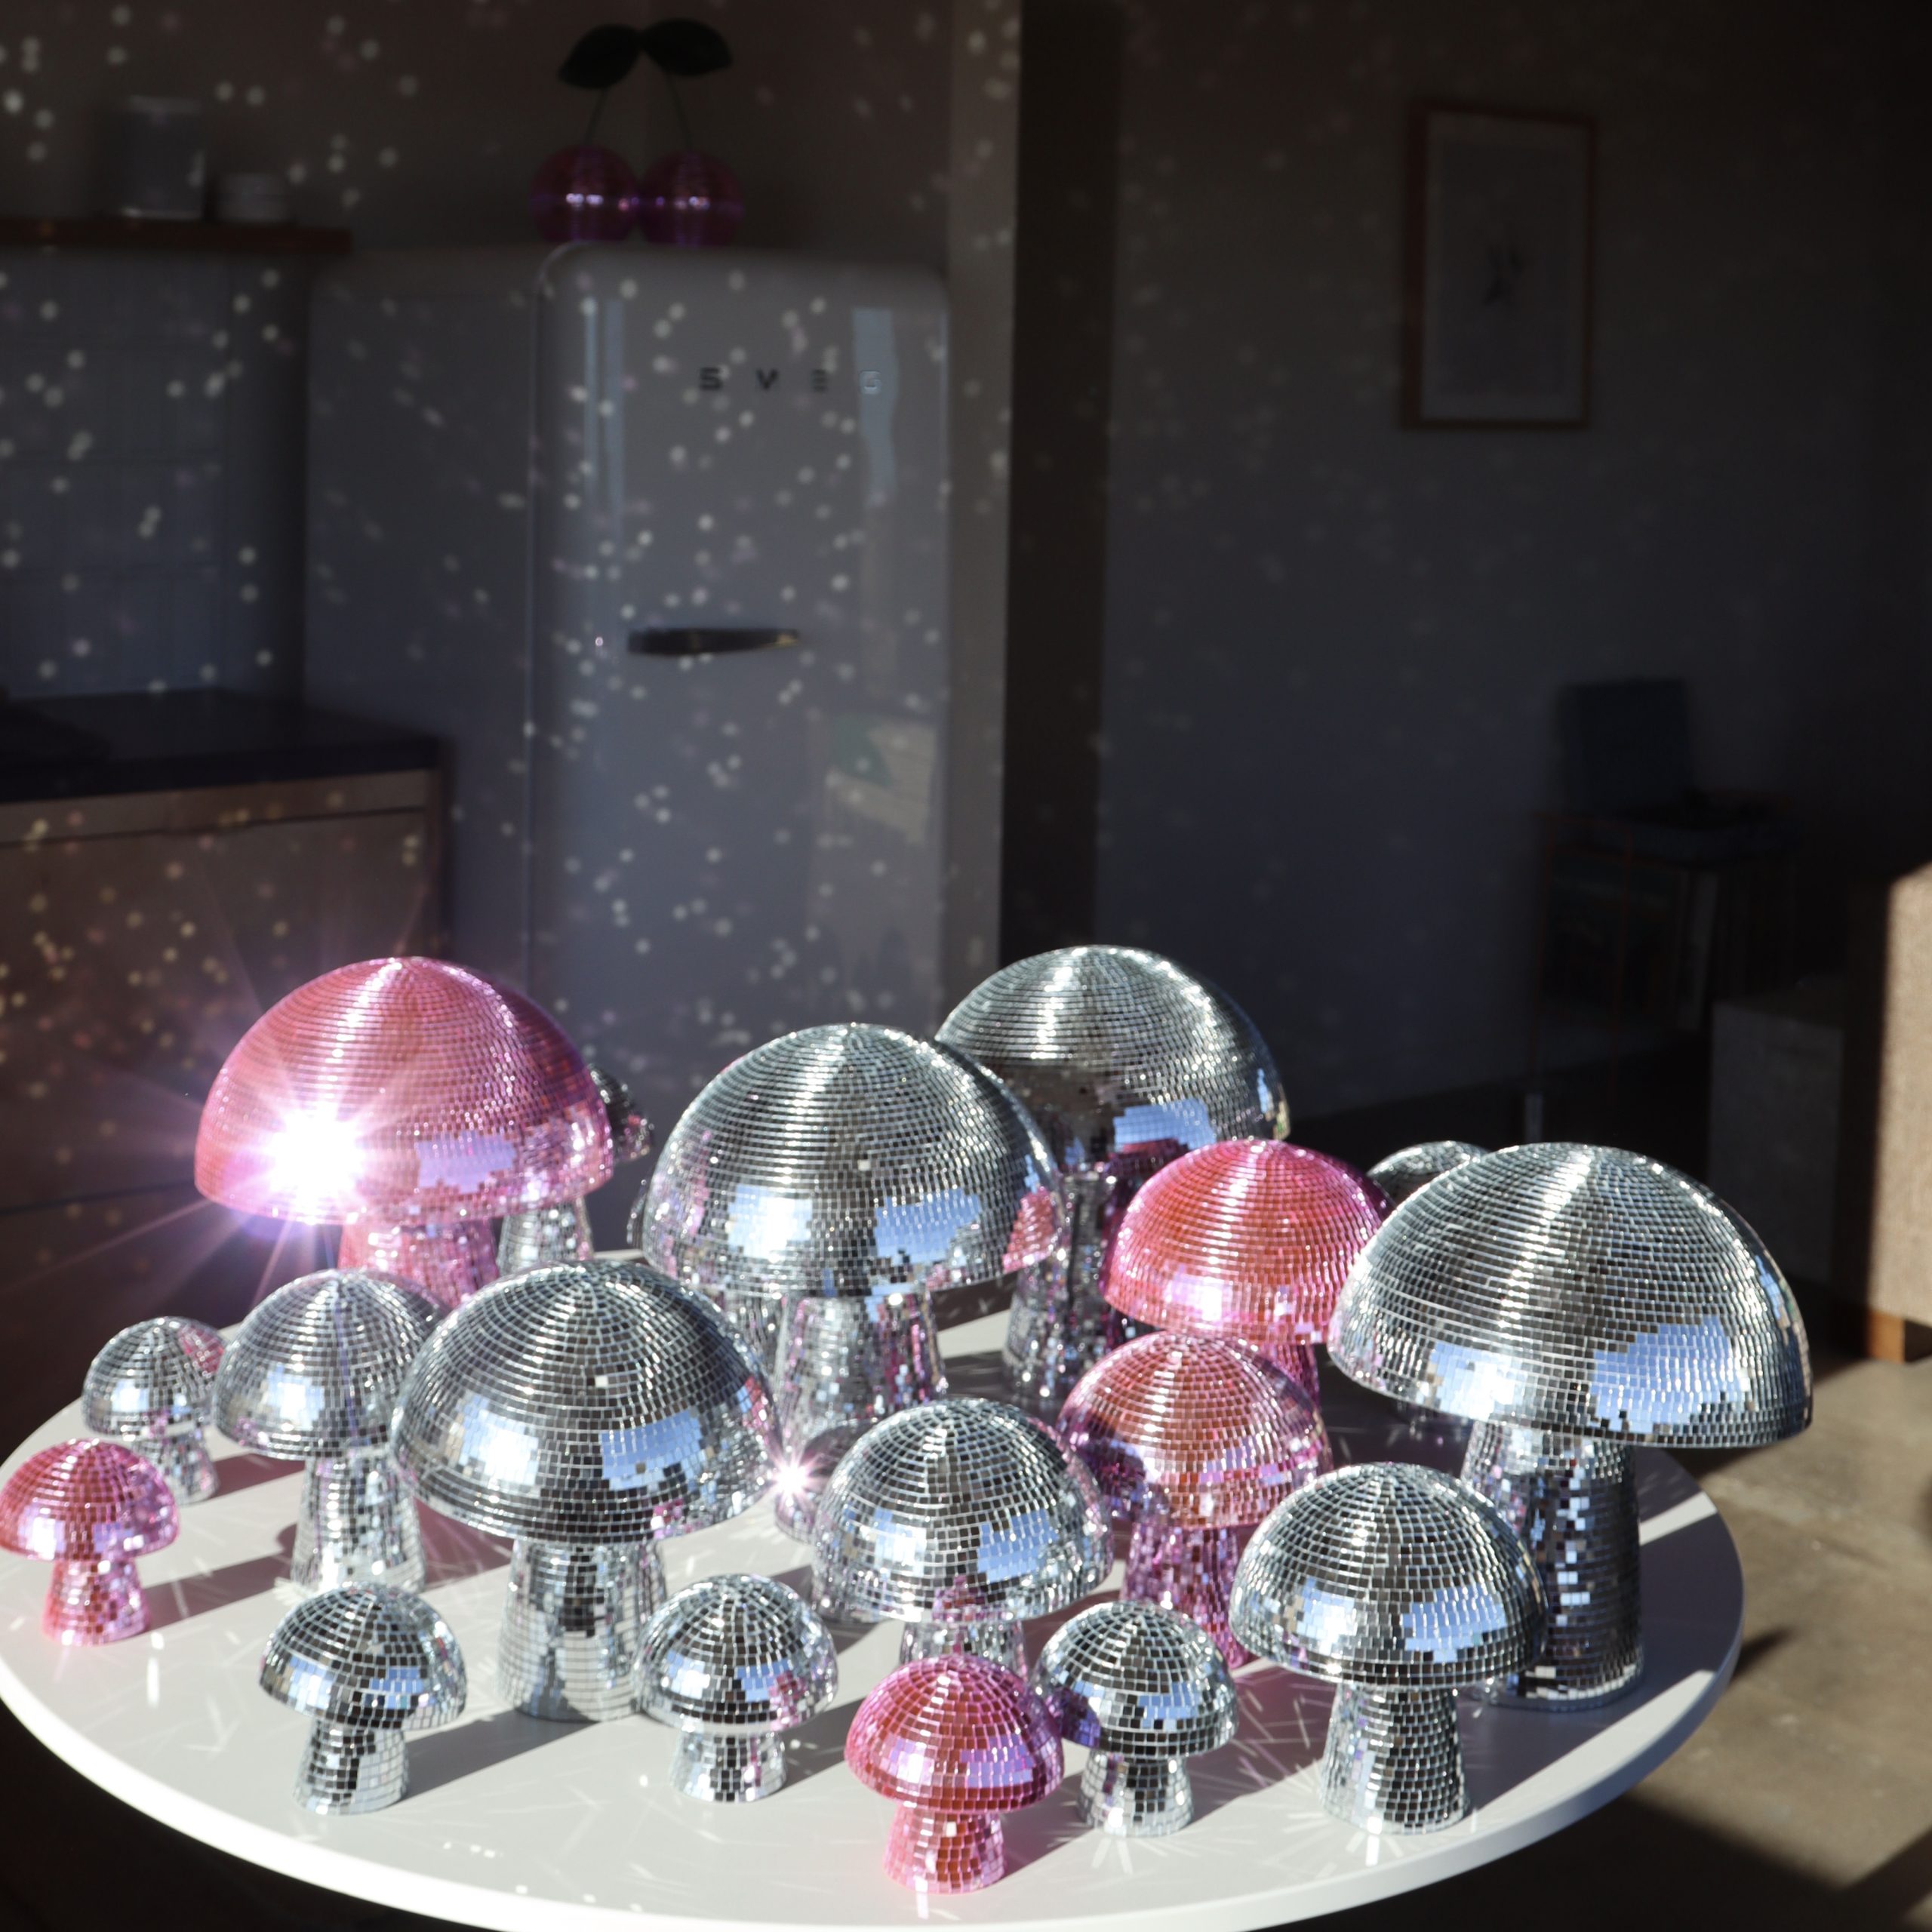 The Original Disco Mushroom Ball